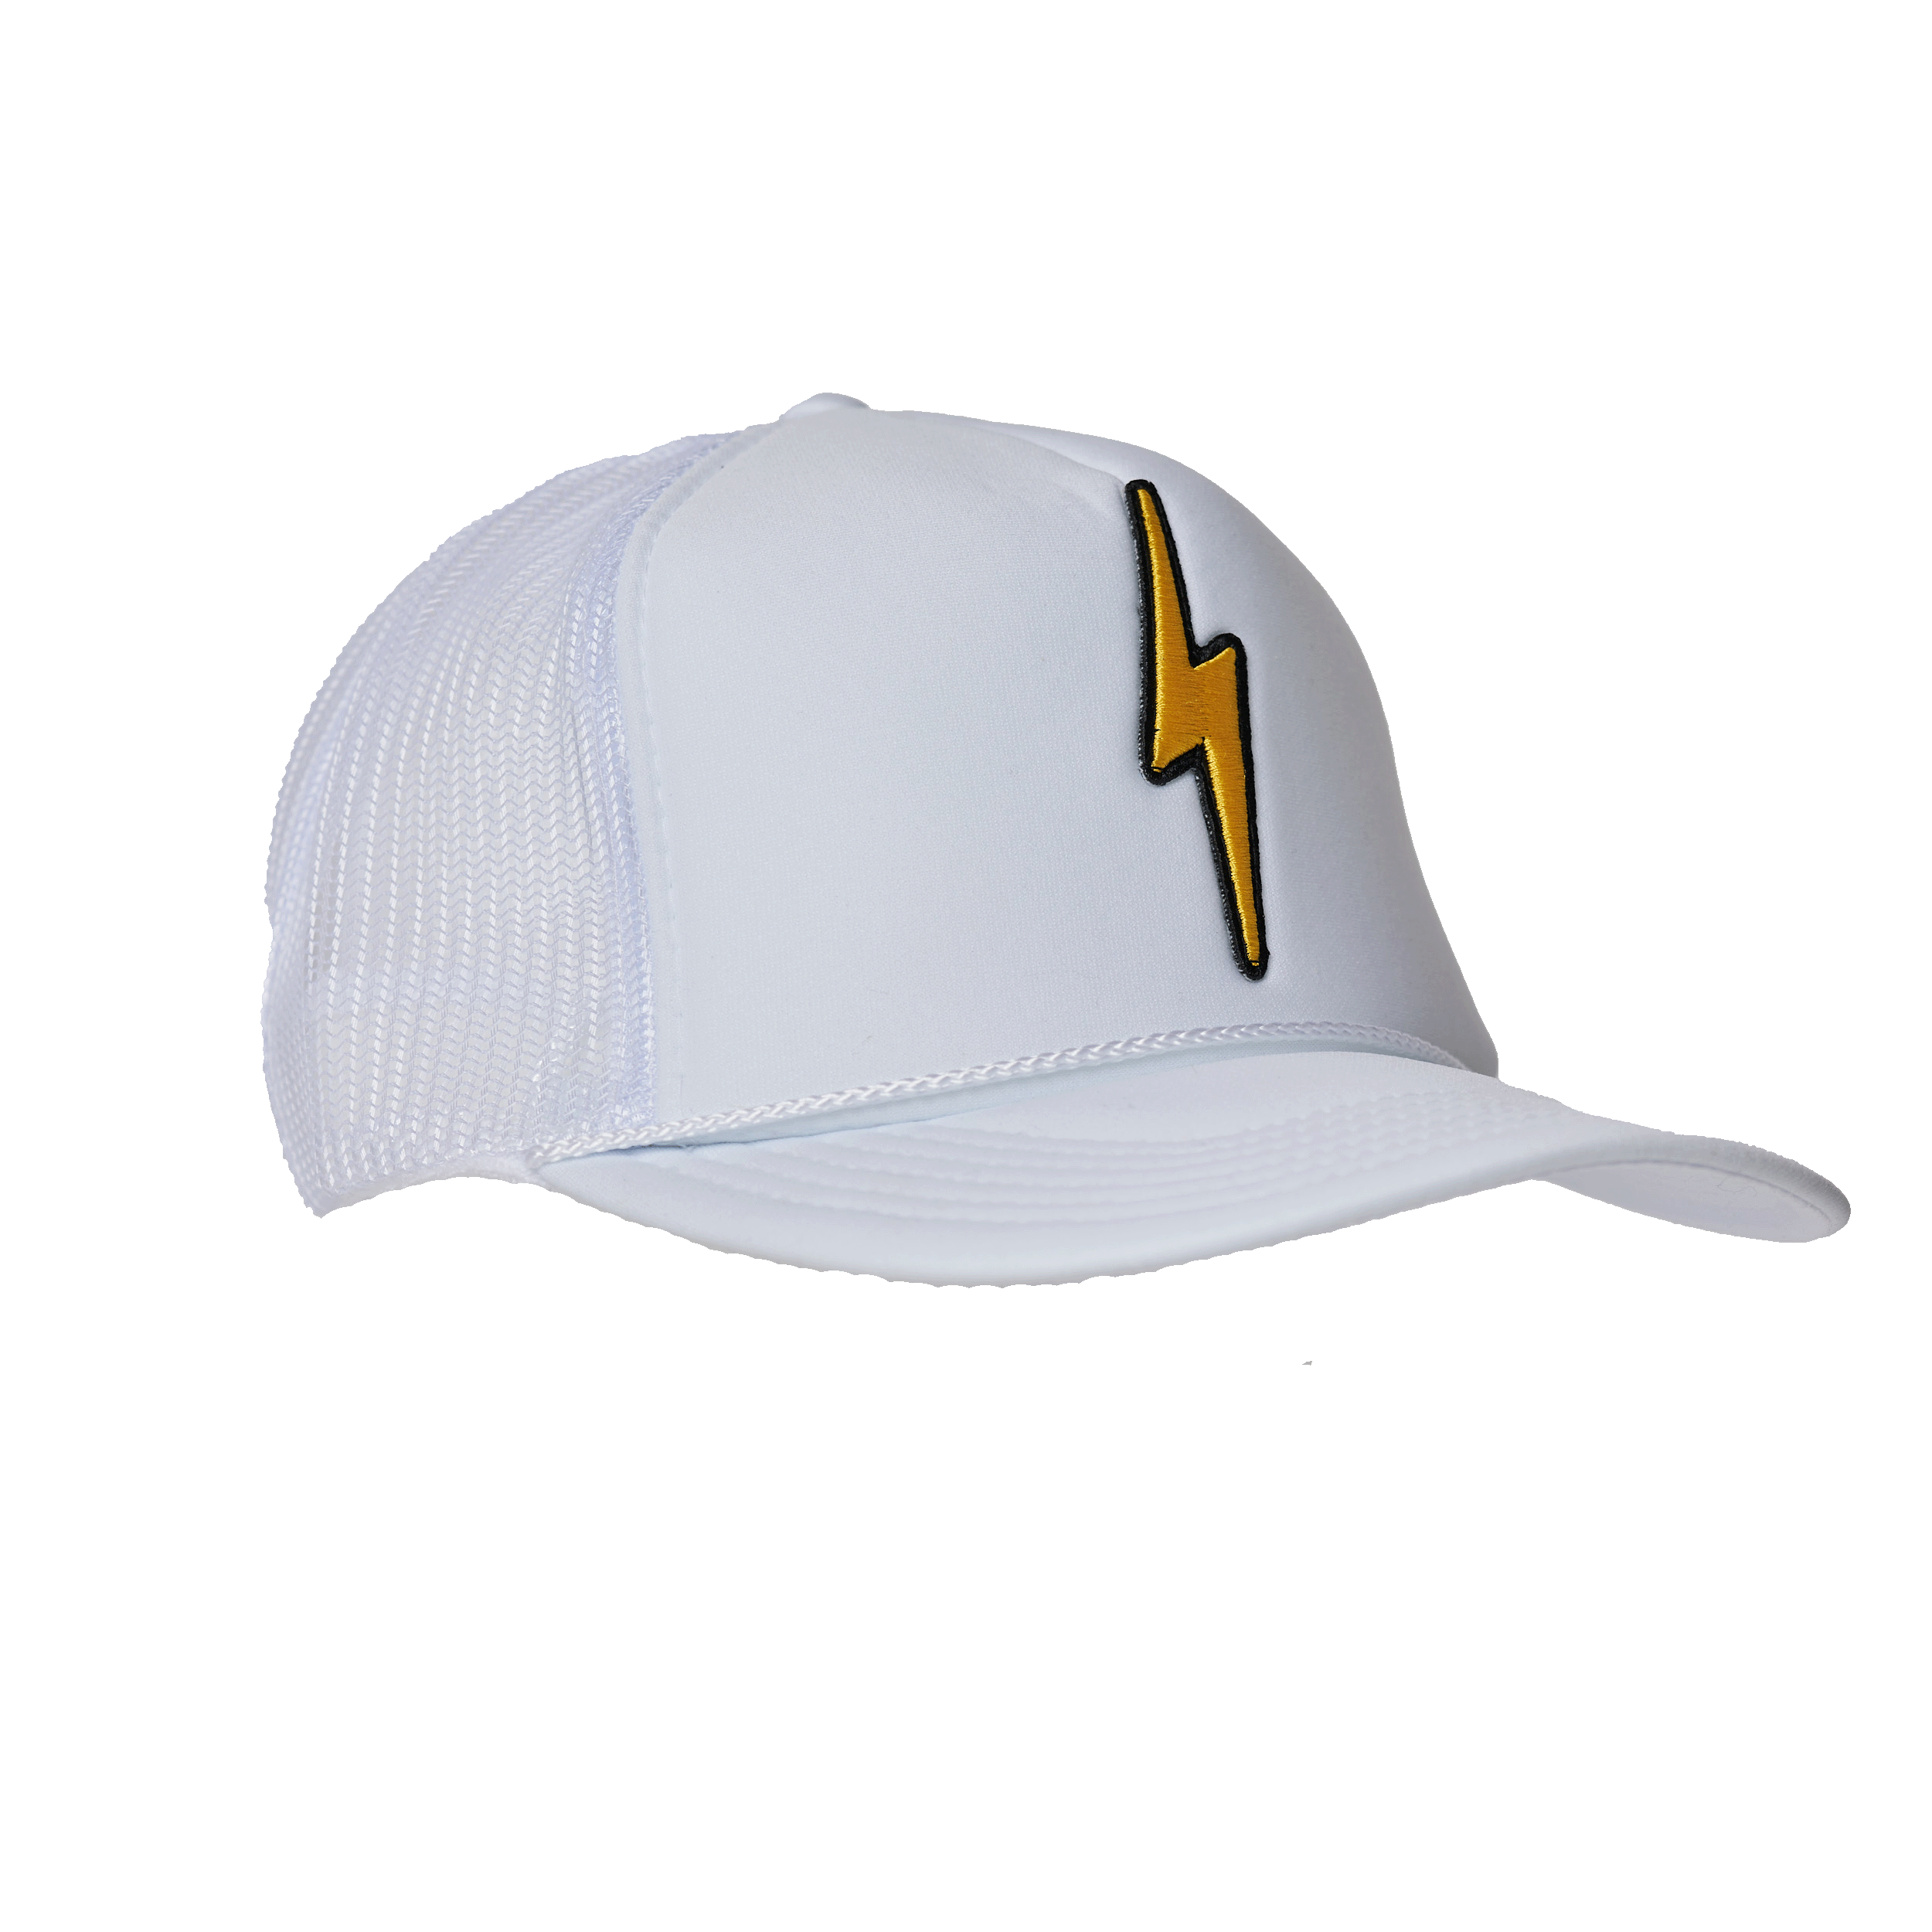 Lightning Bolt Surfing Snapback Trucker Cap Hat Rainbow Bolt